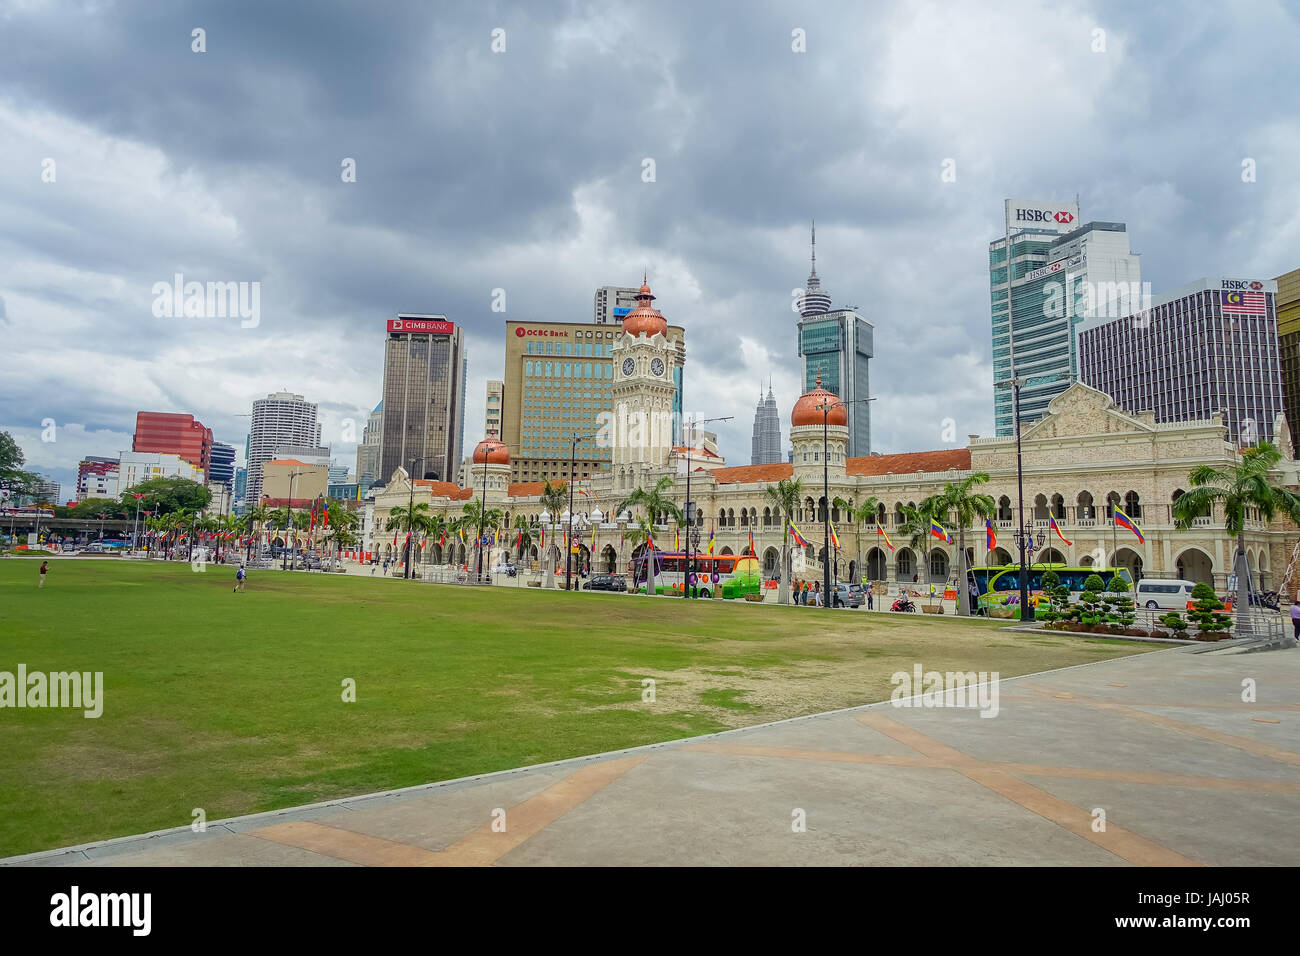 Kuala Lumpur, Malaisie - le 9 mars 2017 : Merdeka Square, littéralement la Independece Square, est l'endroit où le drapeau malais hissé pour la première fois en 1957. Banque D'Images